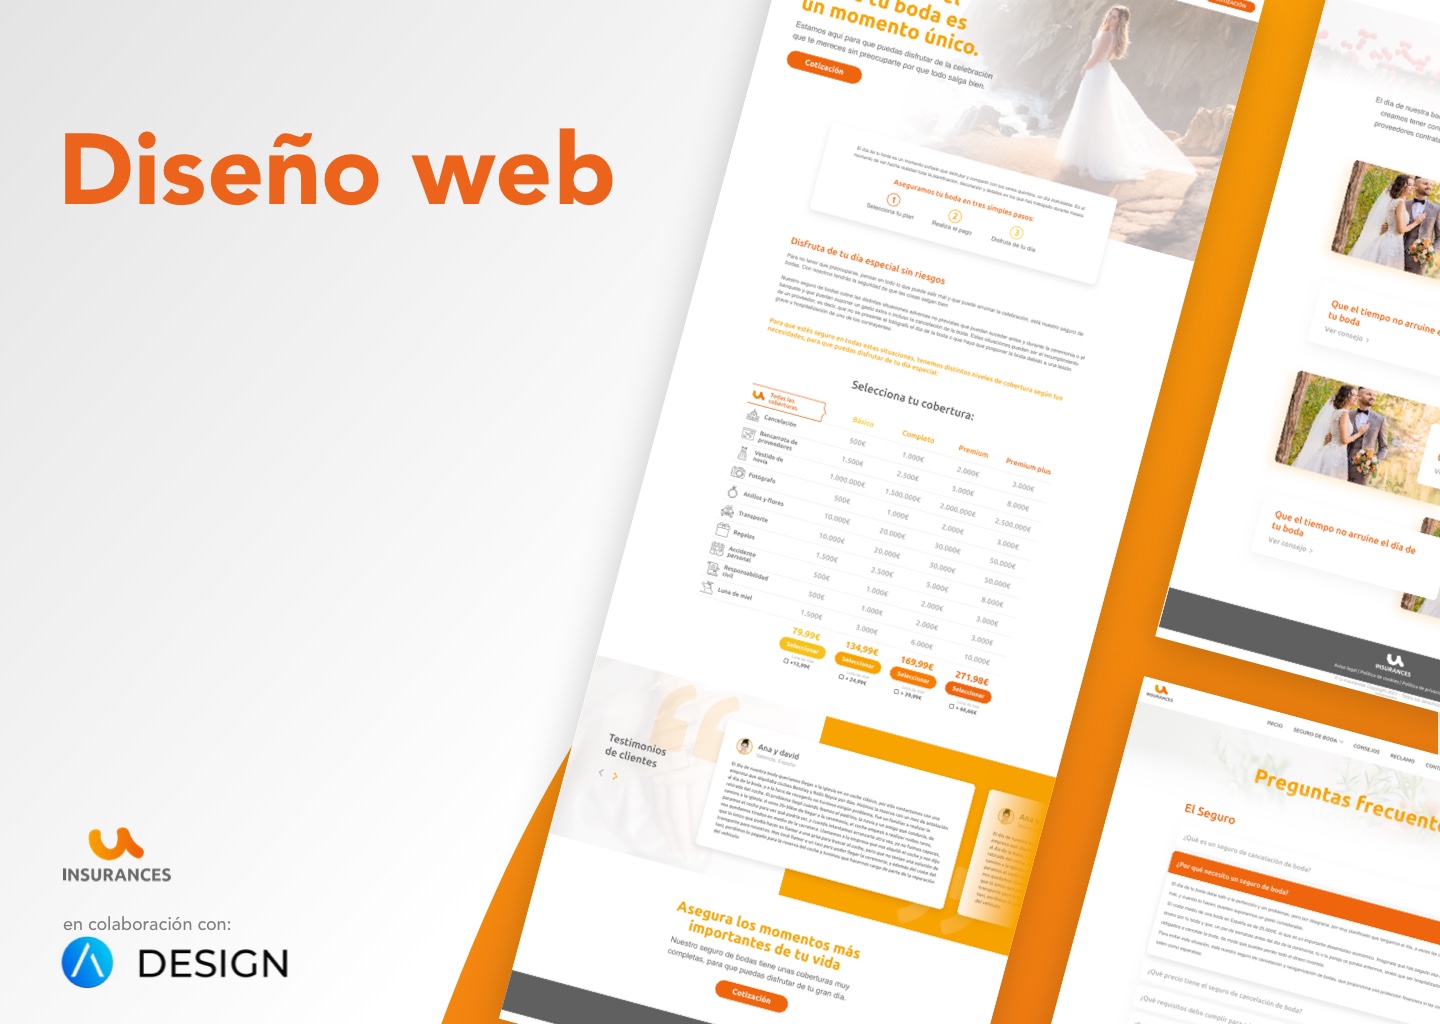 Diseño web - Uinsurances